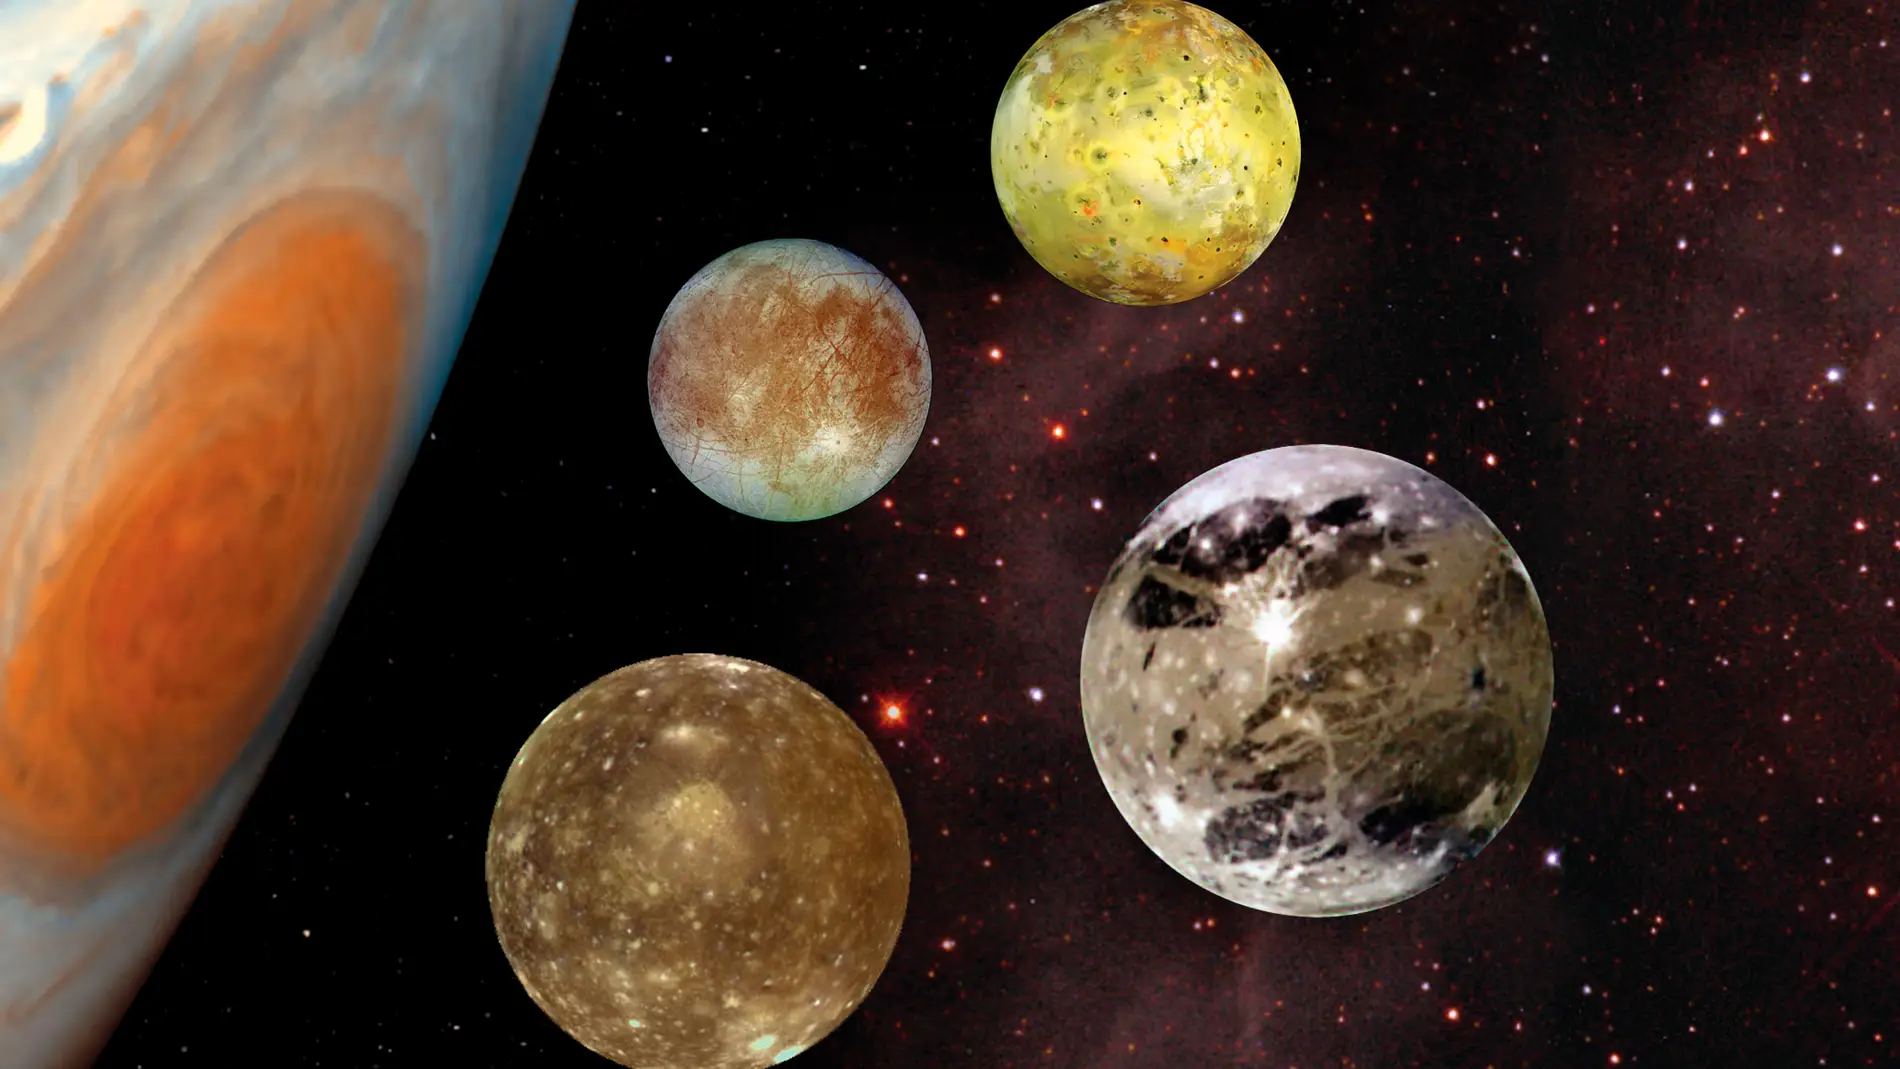 Las cuatro lunas más grandes de Júpiter (Io, Europa, Ganymede y Callisto) son conocidas como los satélites de Galileo